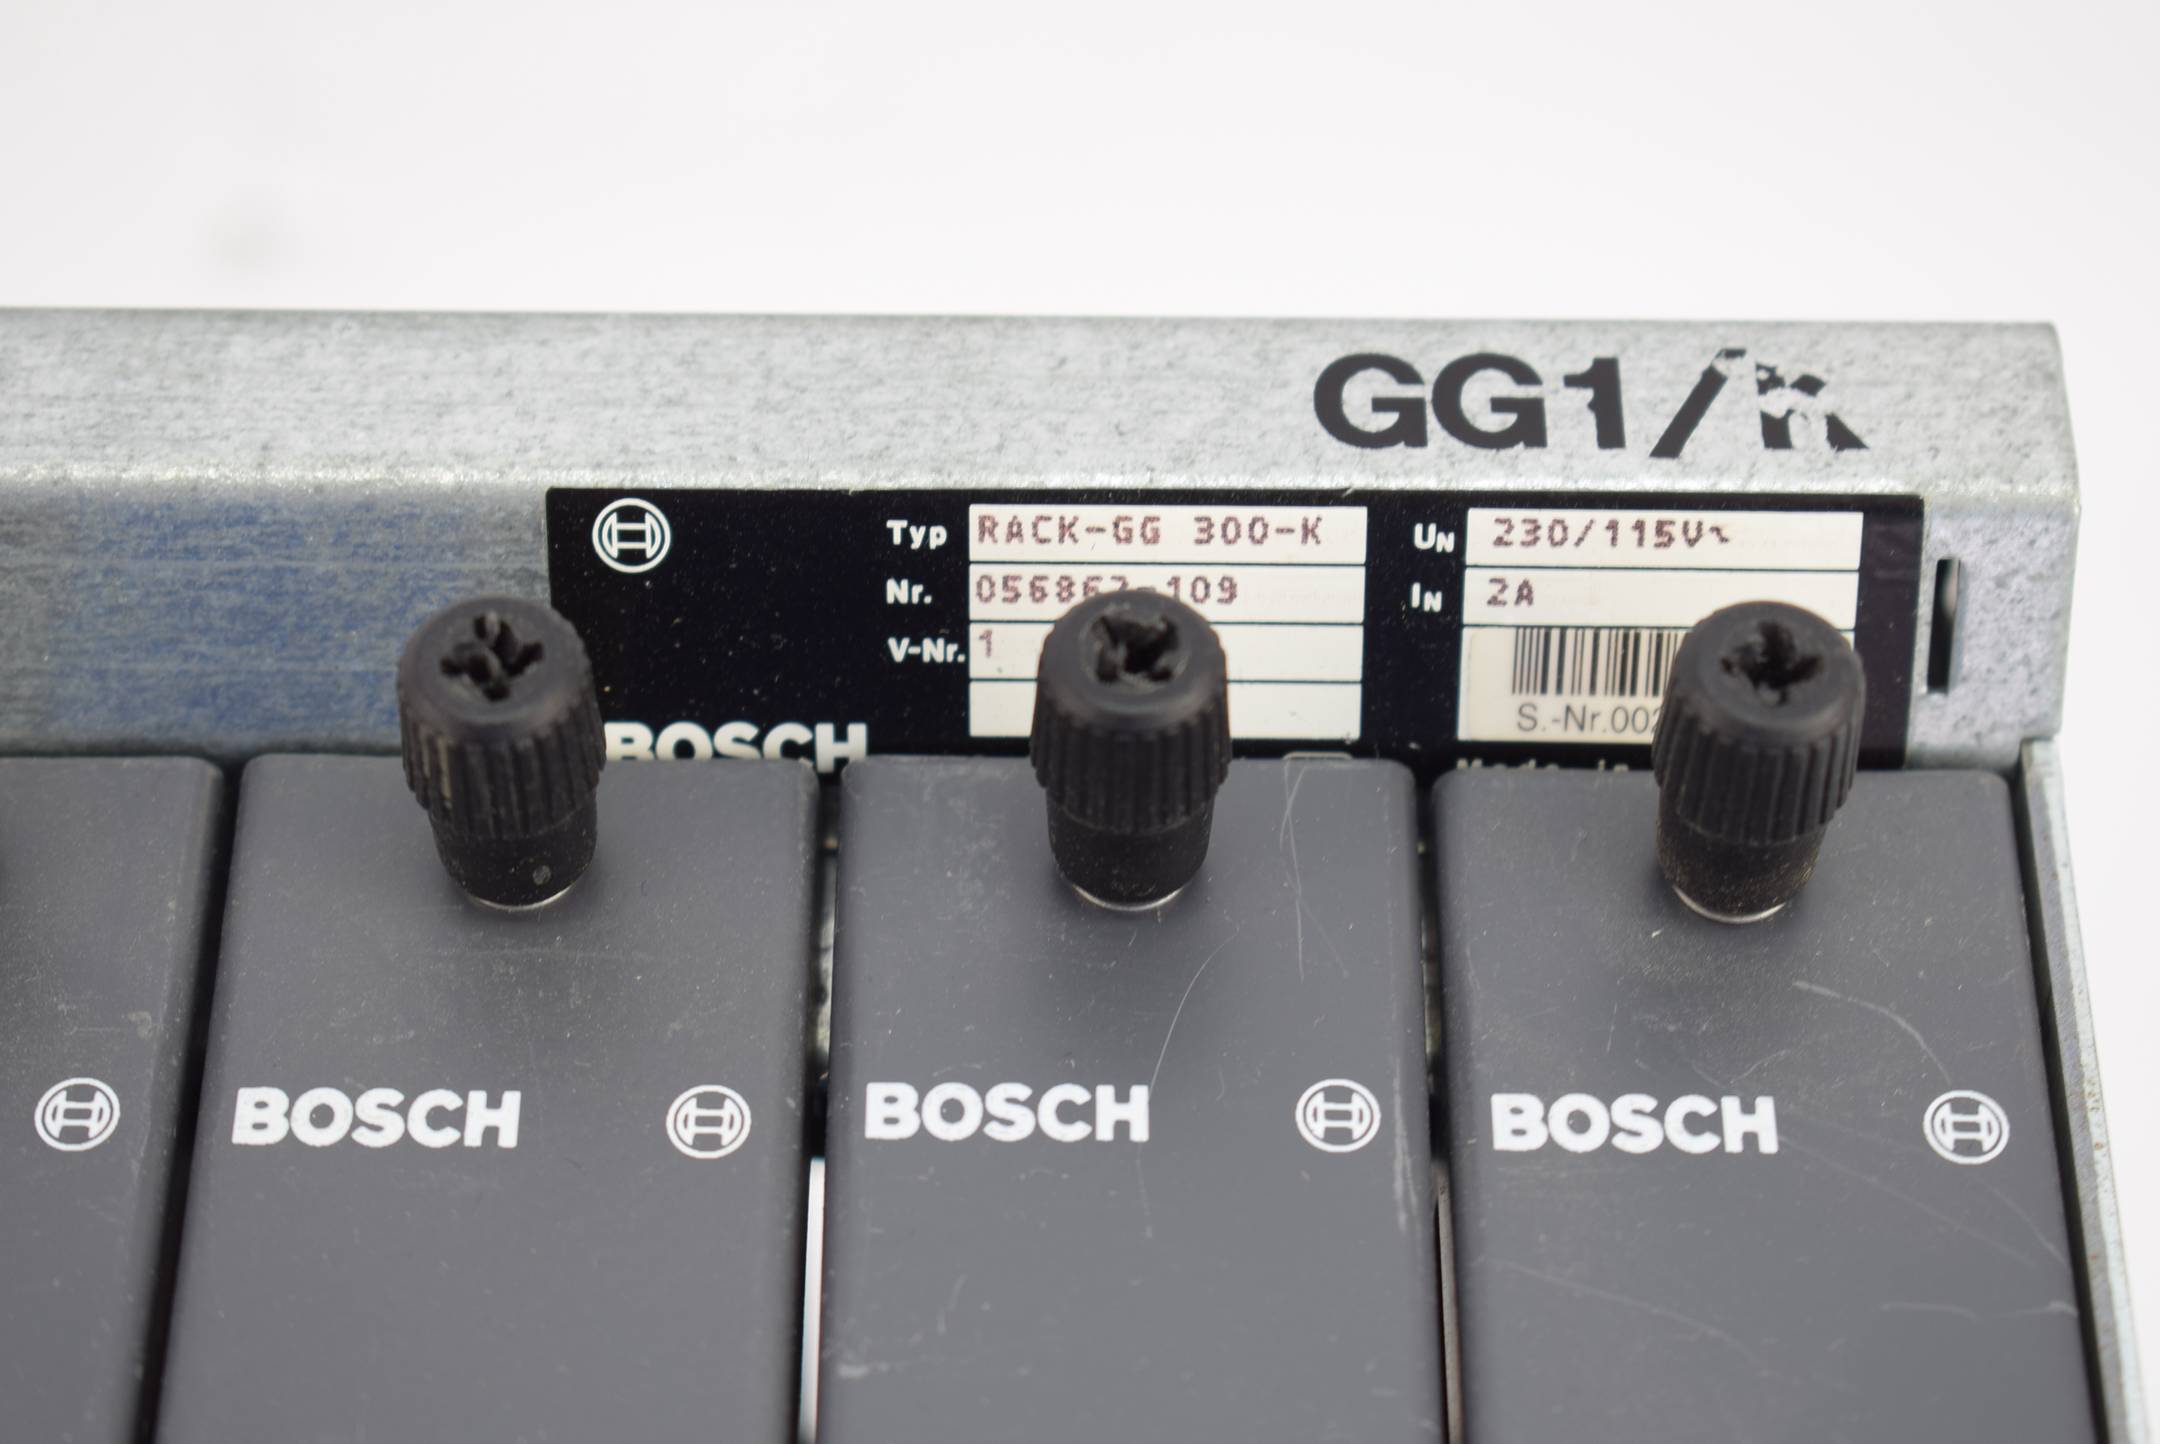 Bosch Rack-GG 300-K inkl. Stromversorgung NT2 1070062687-301